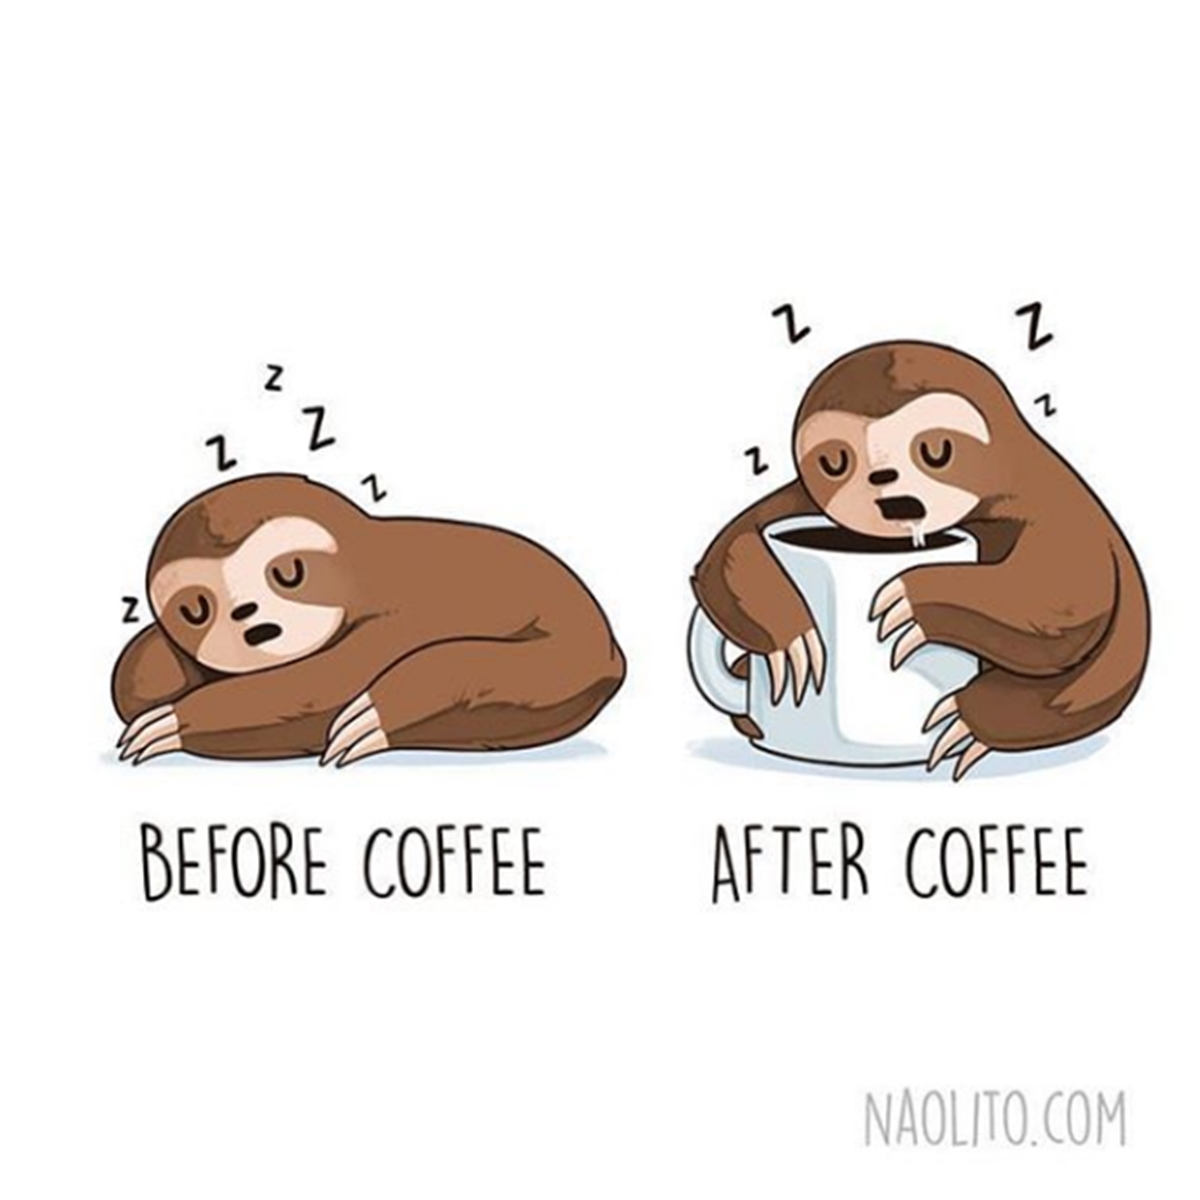 7 Ilustrasi gambarkan sebelum vs sesudah minum kopi, real banget deh